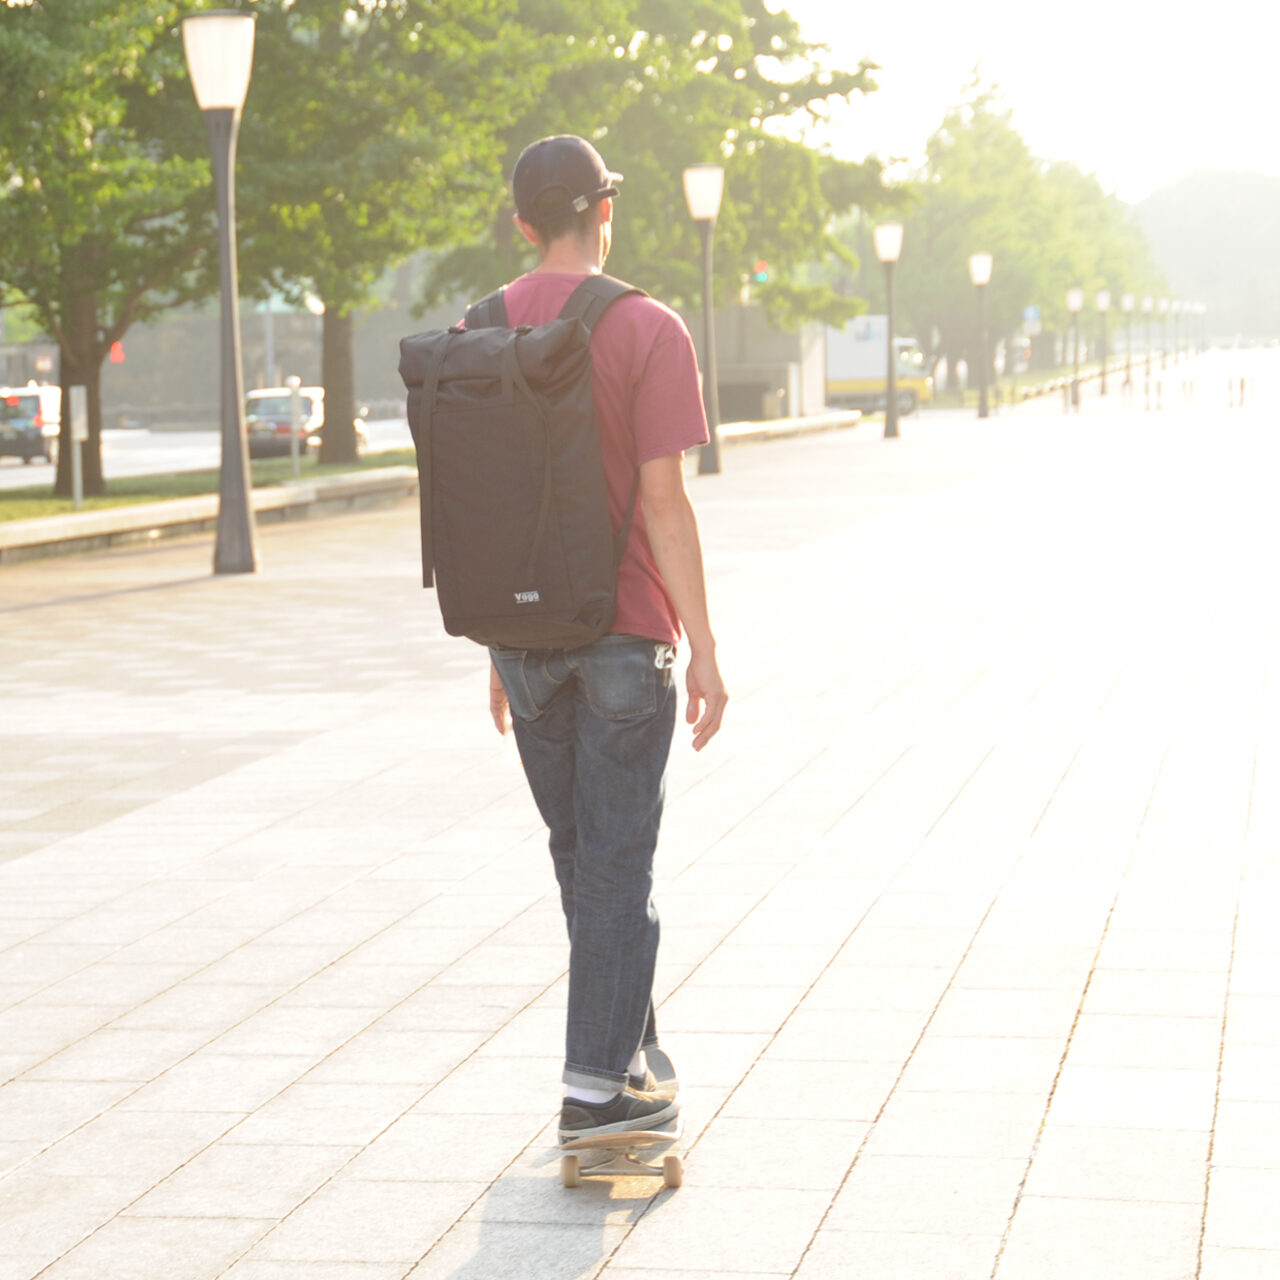 Vaga – Bags for skateboarding